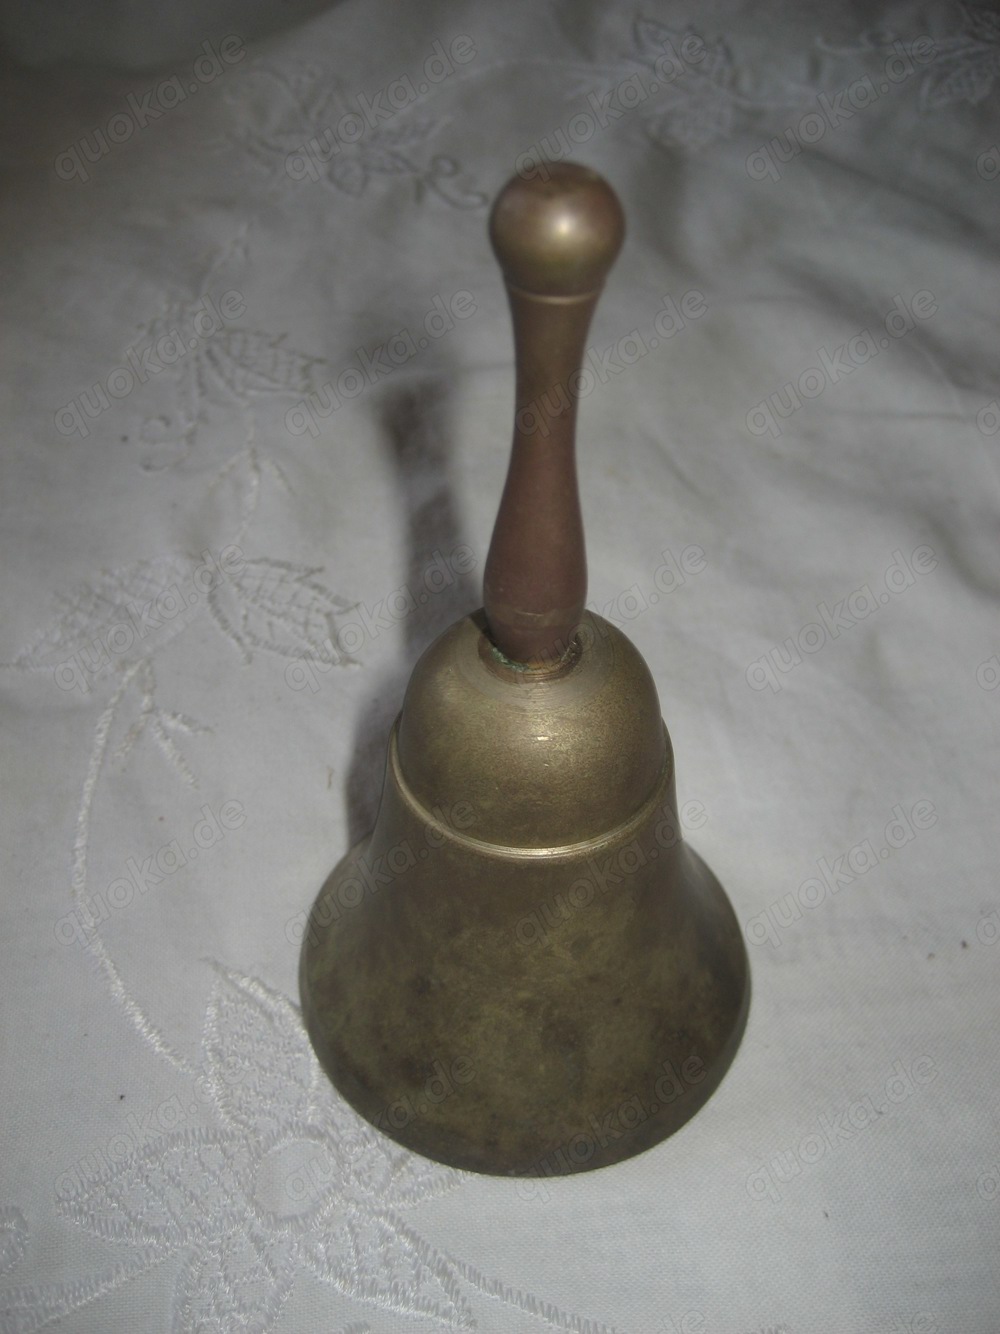 Tischglocke Messing Tischklingel Schelle Glocke Vintage